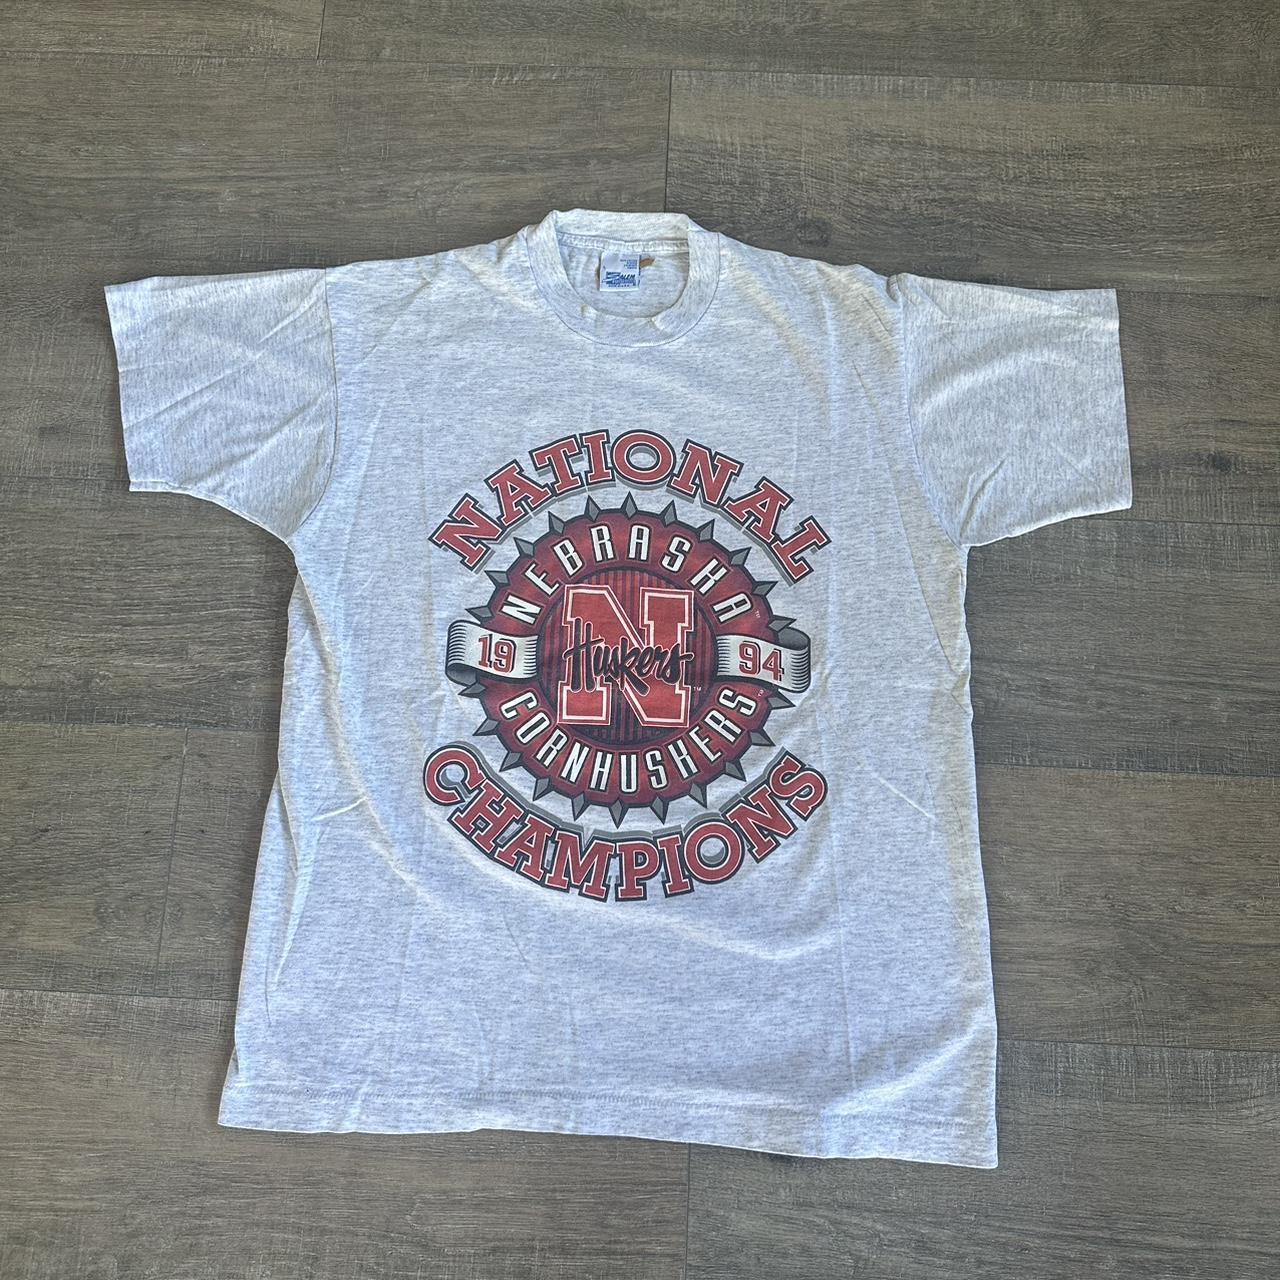 1994 Nebraska Cornhuskers Tee single stitched - Depop